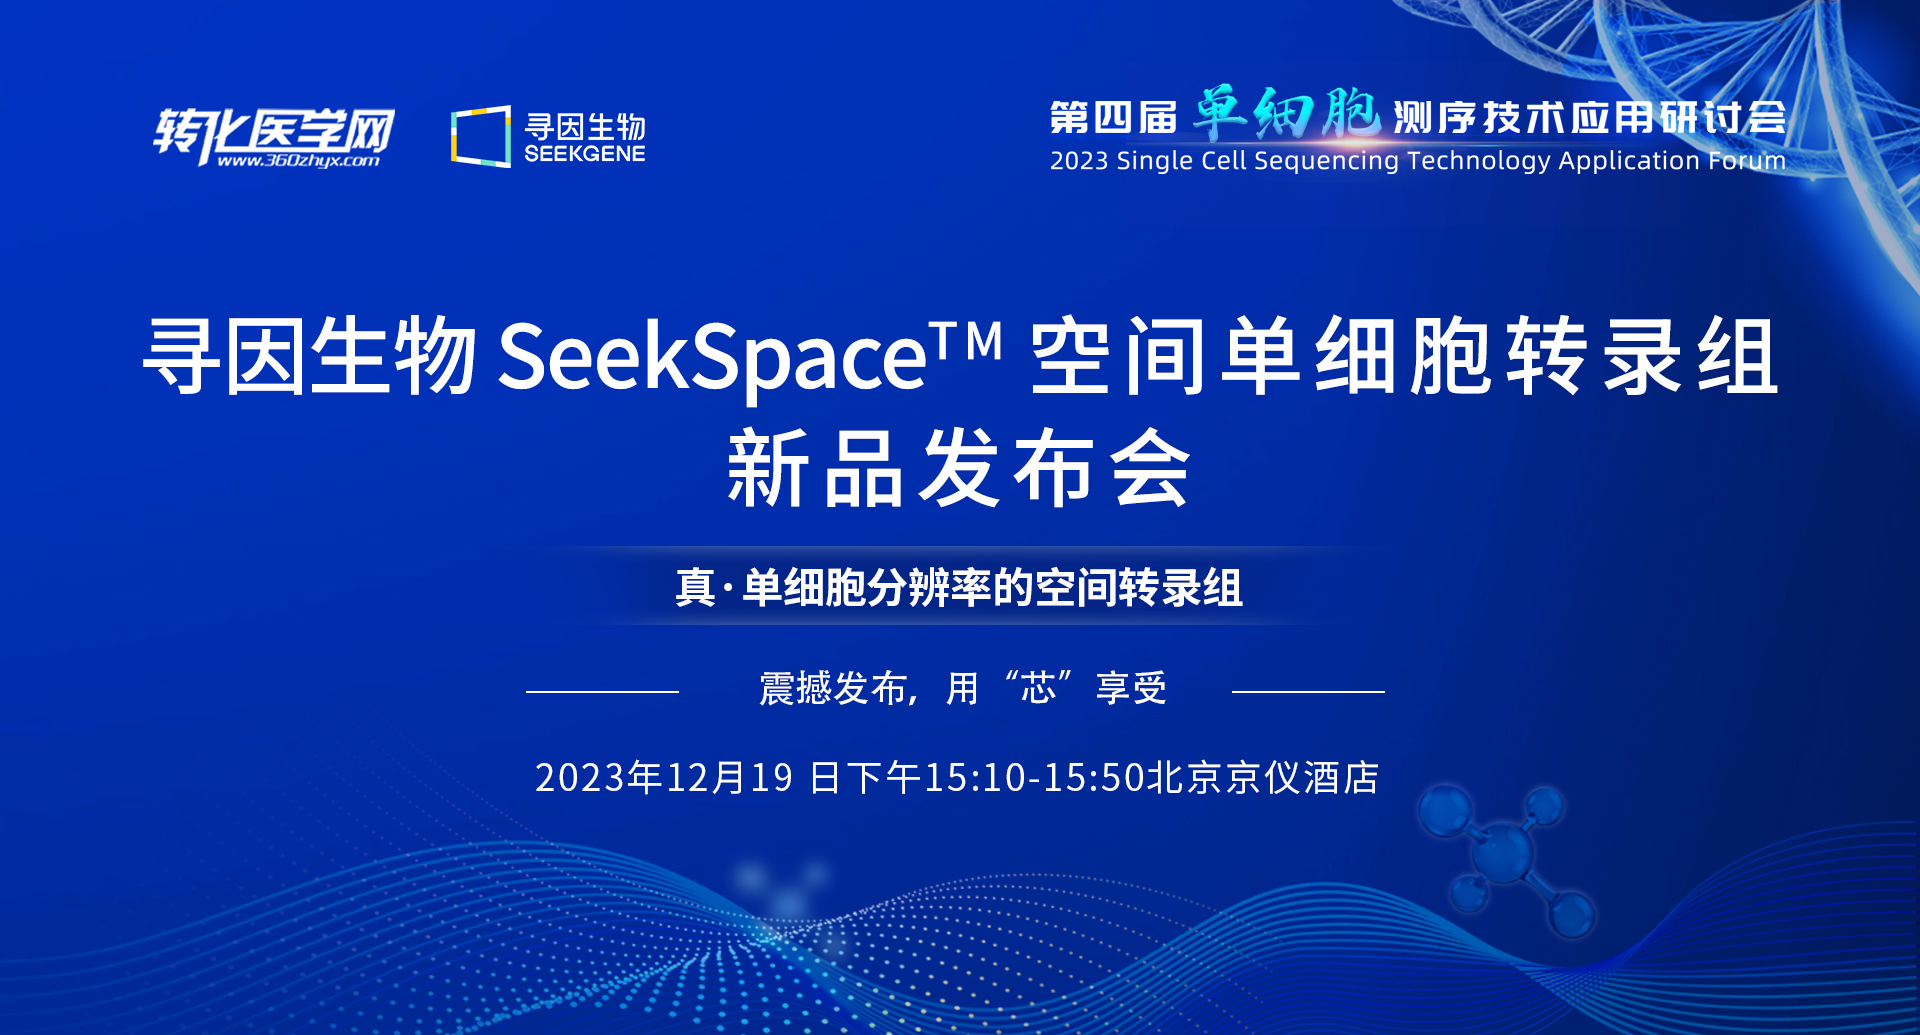 寻因生物邀请您参加12月19日·北京-SeekSpace™空间单细胞转录组新品发布会